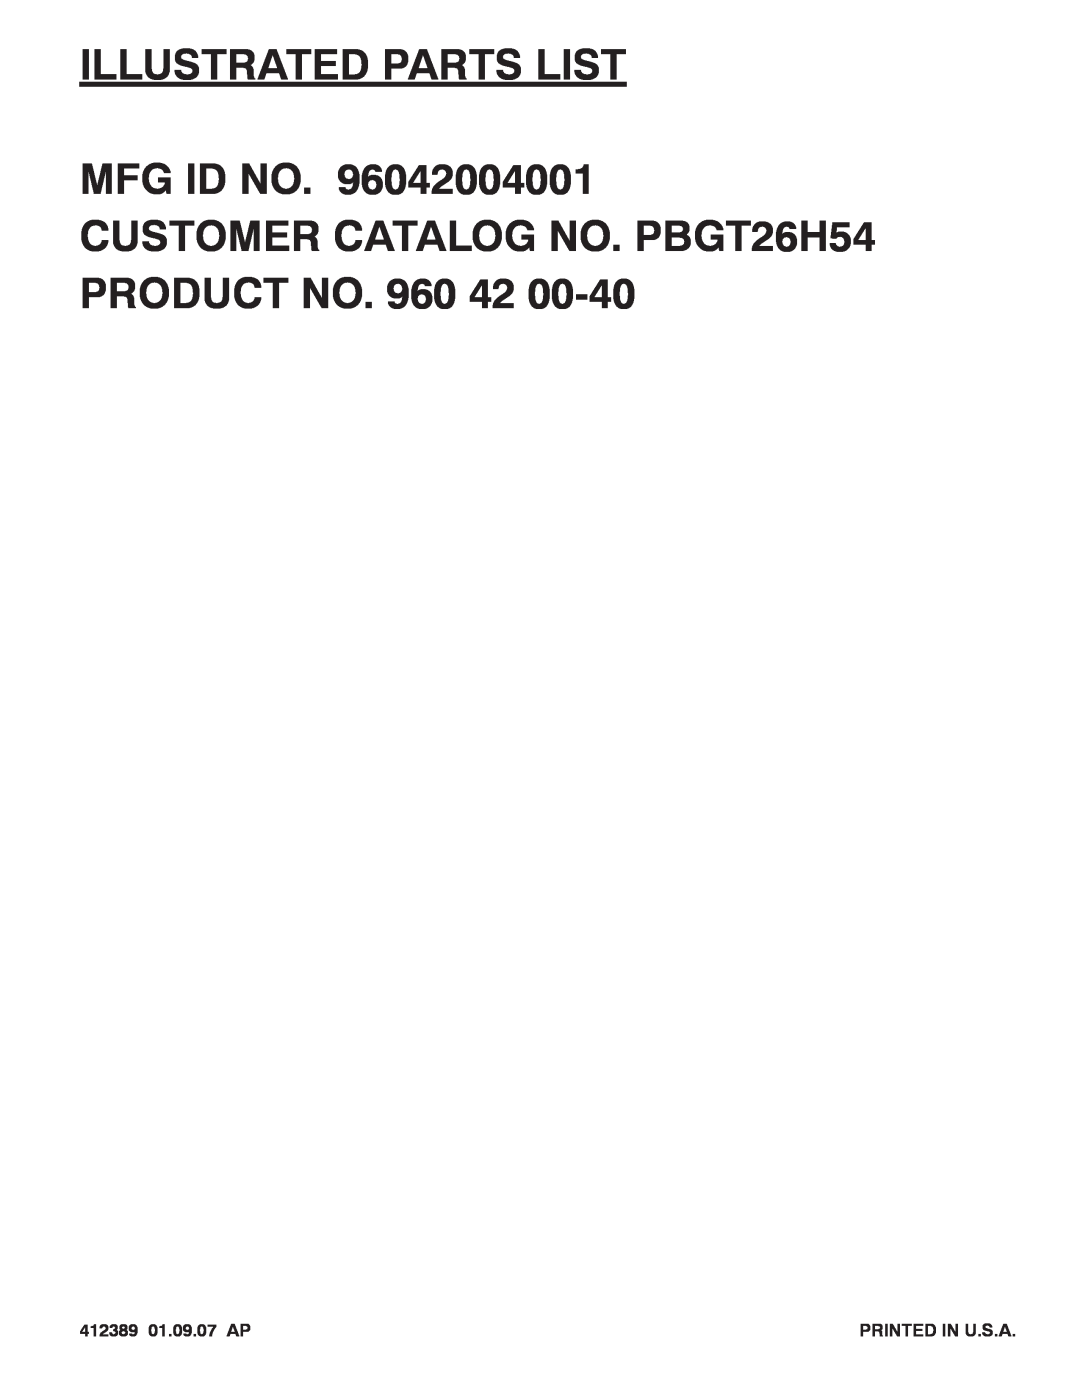 Poulan 960 42 00-40, 96042004001 manual Illustrated Parts List Mfg Id No, CUSTOMER CATALOG NO. PBGT26H54 PRODUCT NO. 960 